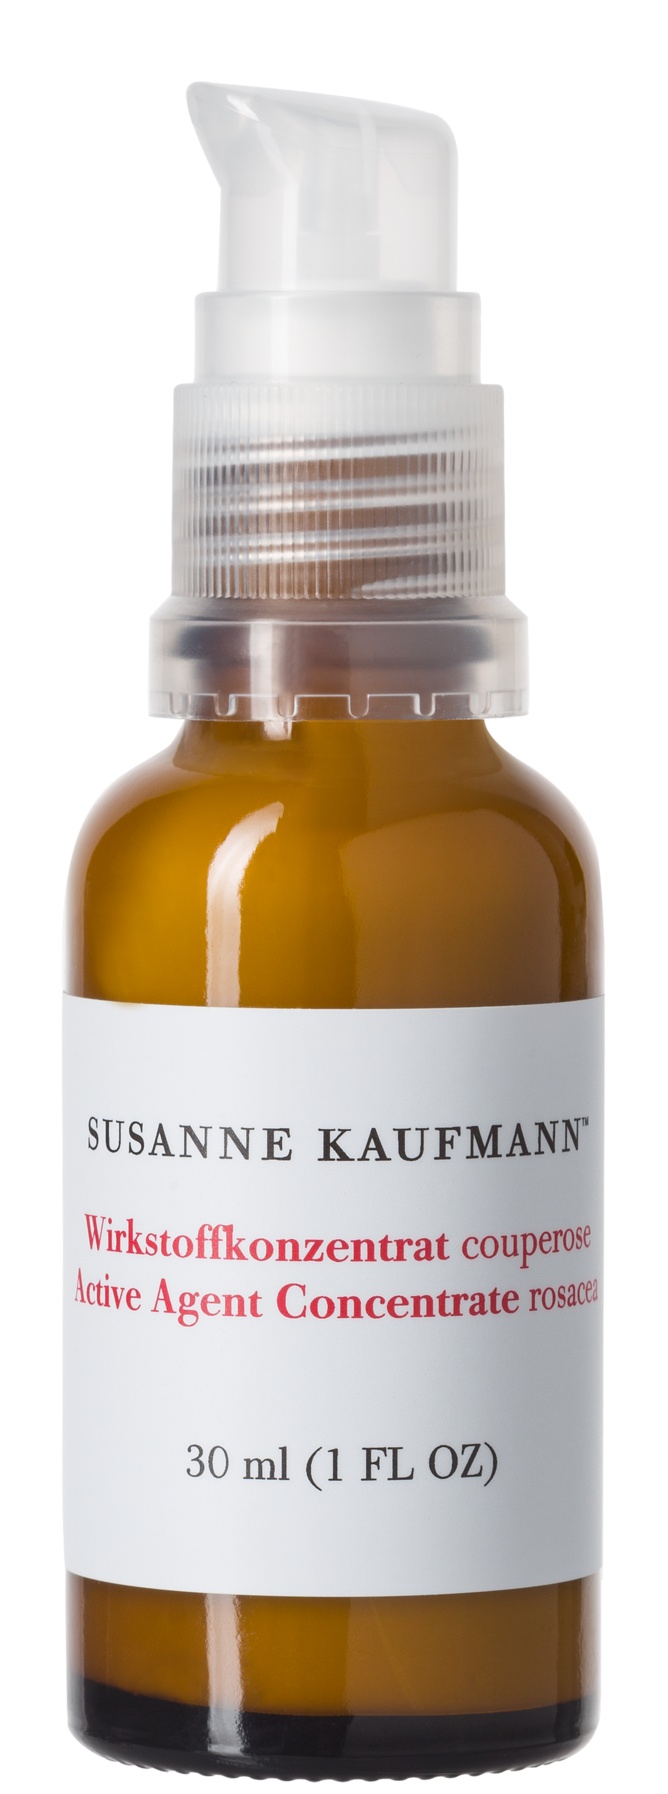 Susanne Kaufmann Active Agent Concentrate Rosacea